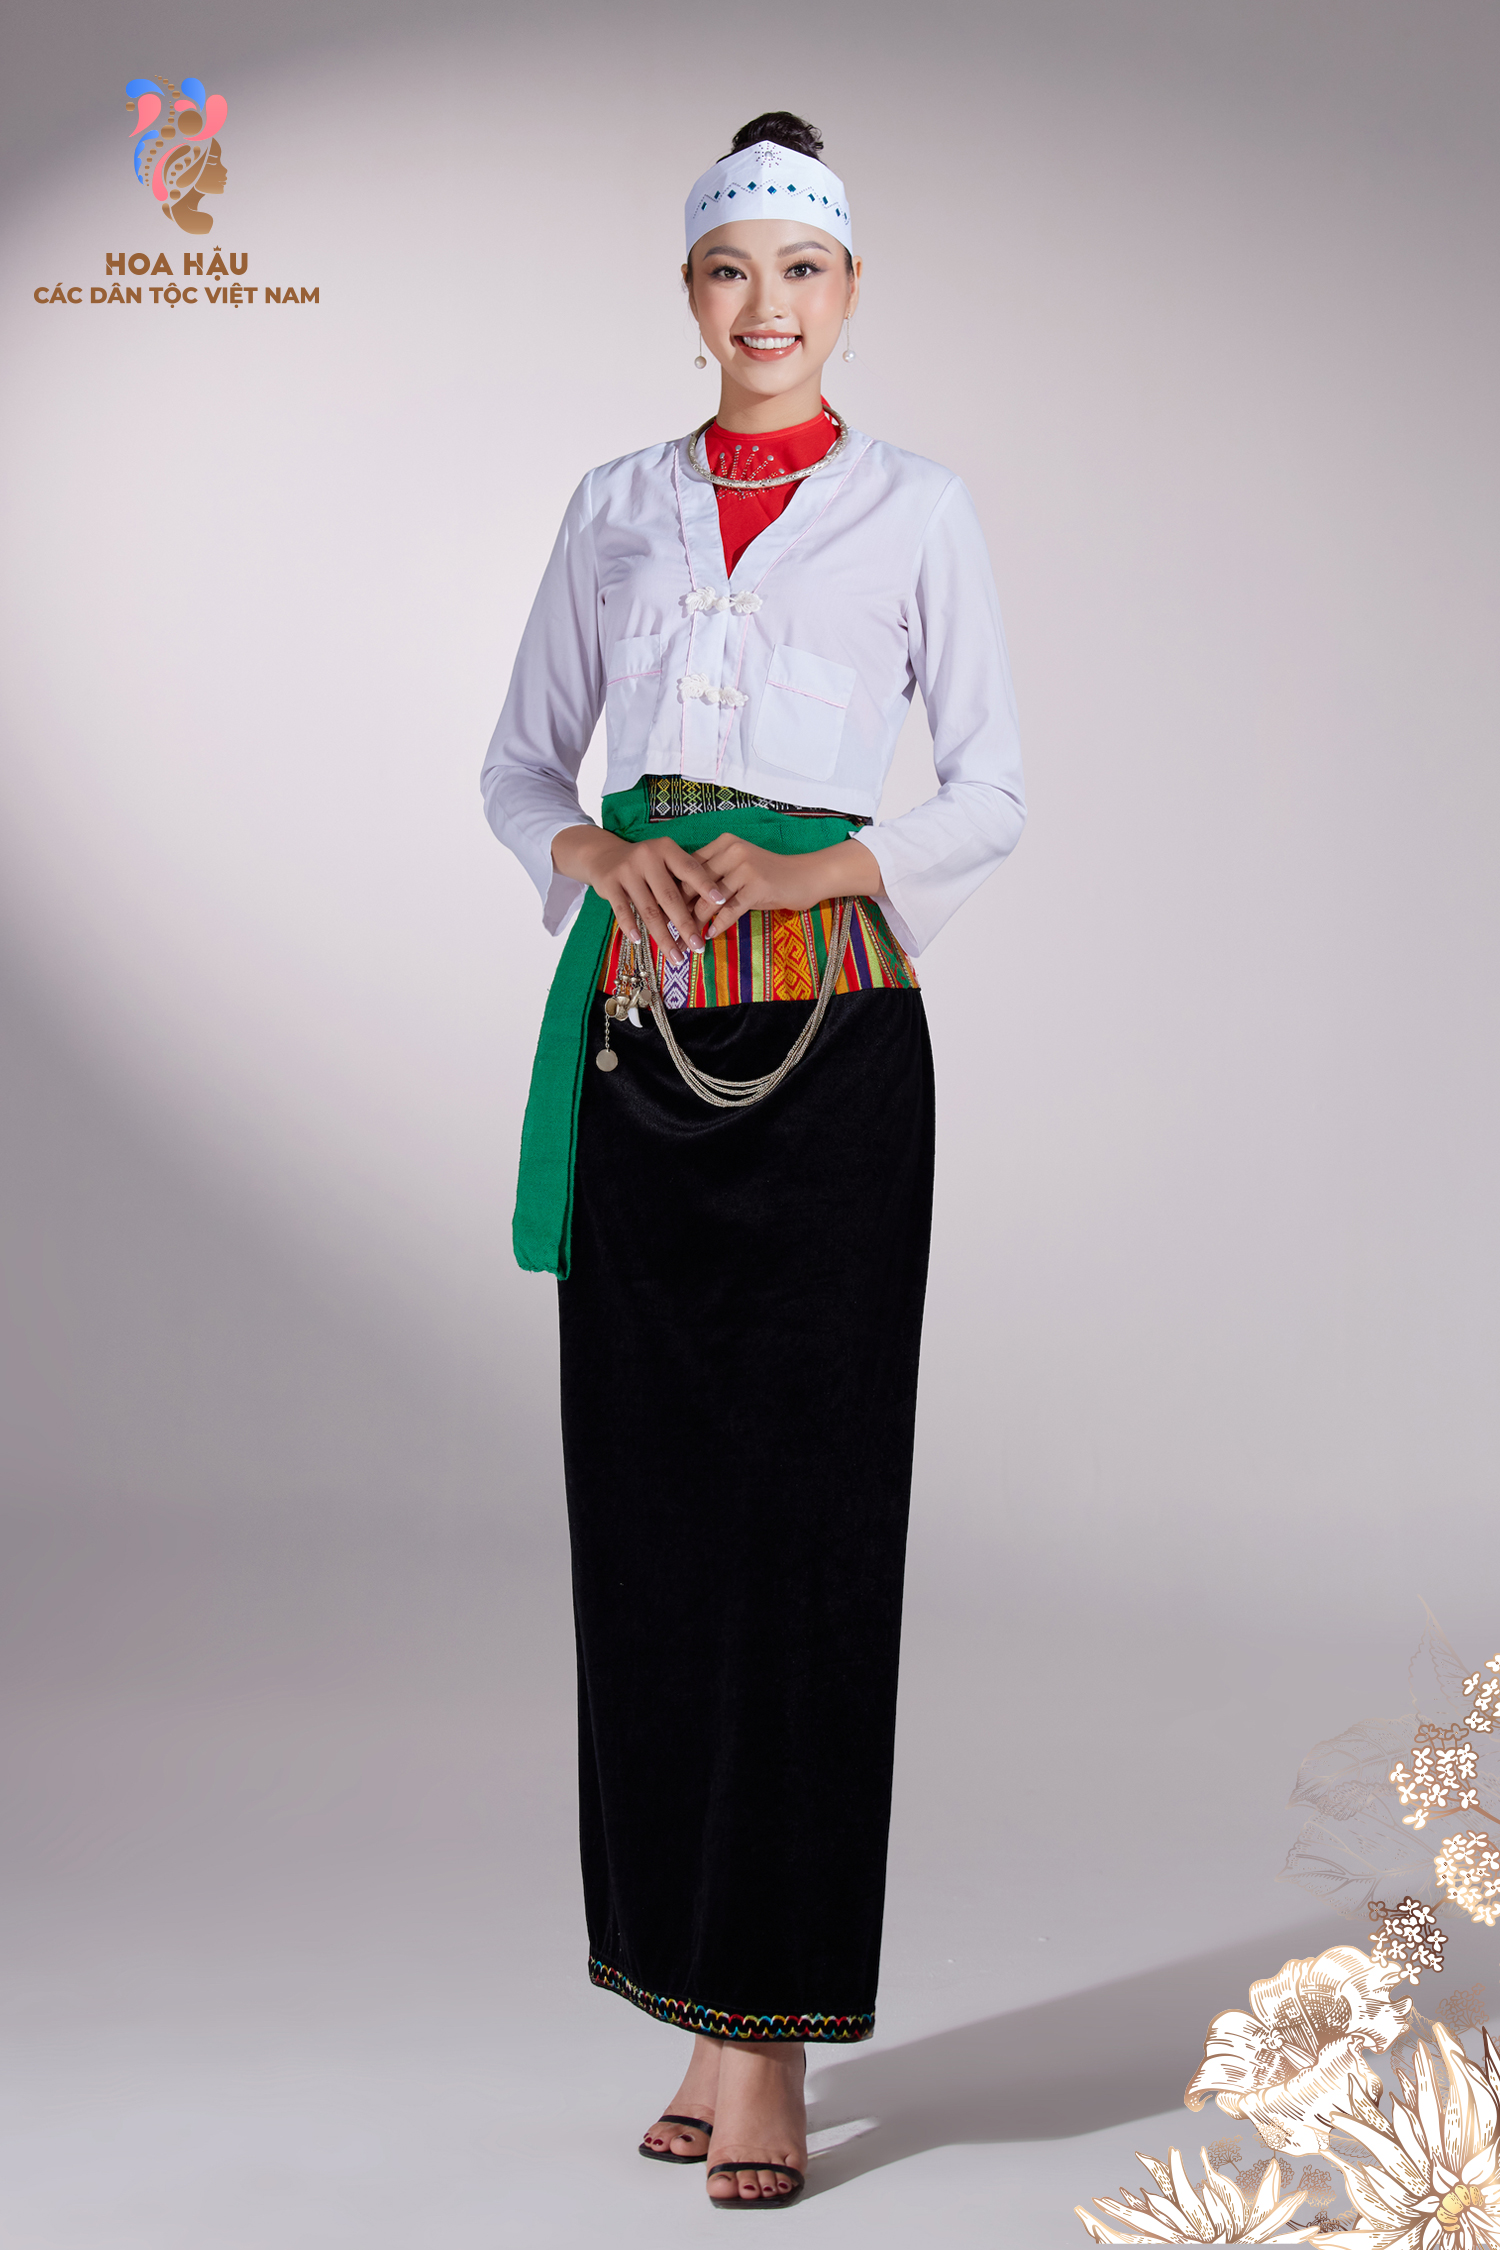 Nguyễn Thảo Liên đem đến những đặc trưng nhất cho trang phục truyền thống của Mường. Thân váy được dệt từ một tấm vải tơ tằm, bên ngoài cạp thêu hoa văn với nhiều gam màu sáng, tất cả tạo nên tổng thể hài hòa, uyển huyển cho người phụ nữ.